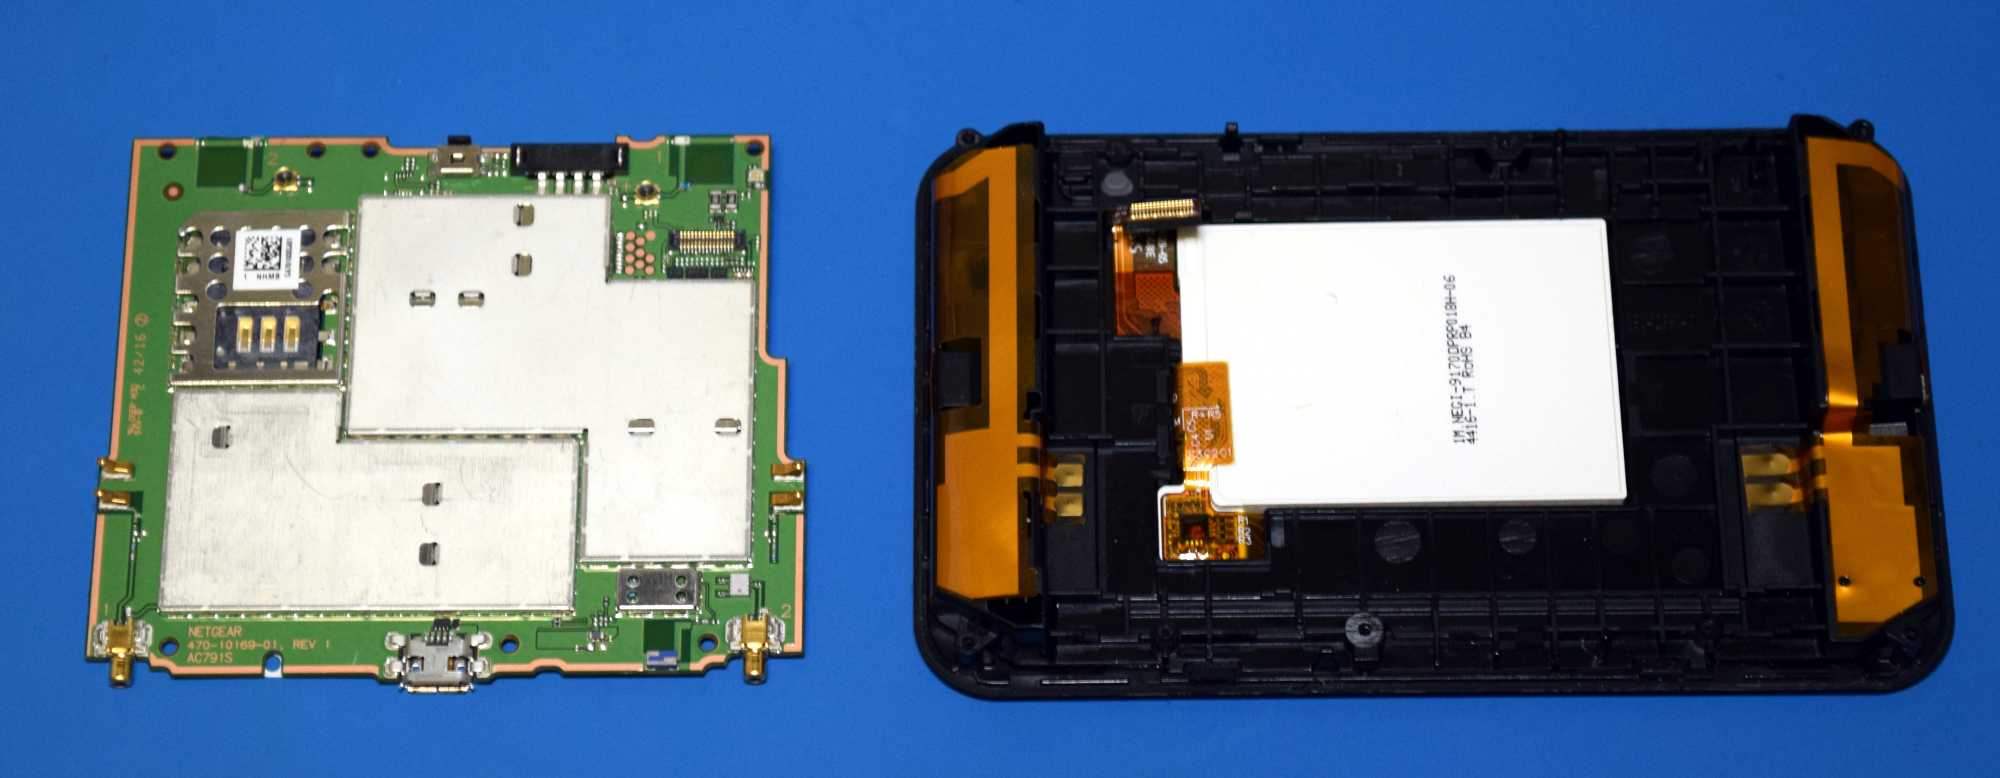 Verizon Jetpack 4G LTE Mobile Hotspot SIM Card Replacement - iFixit Repair  Guide